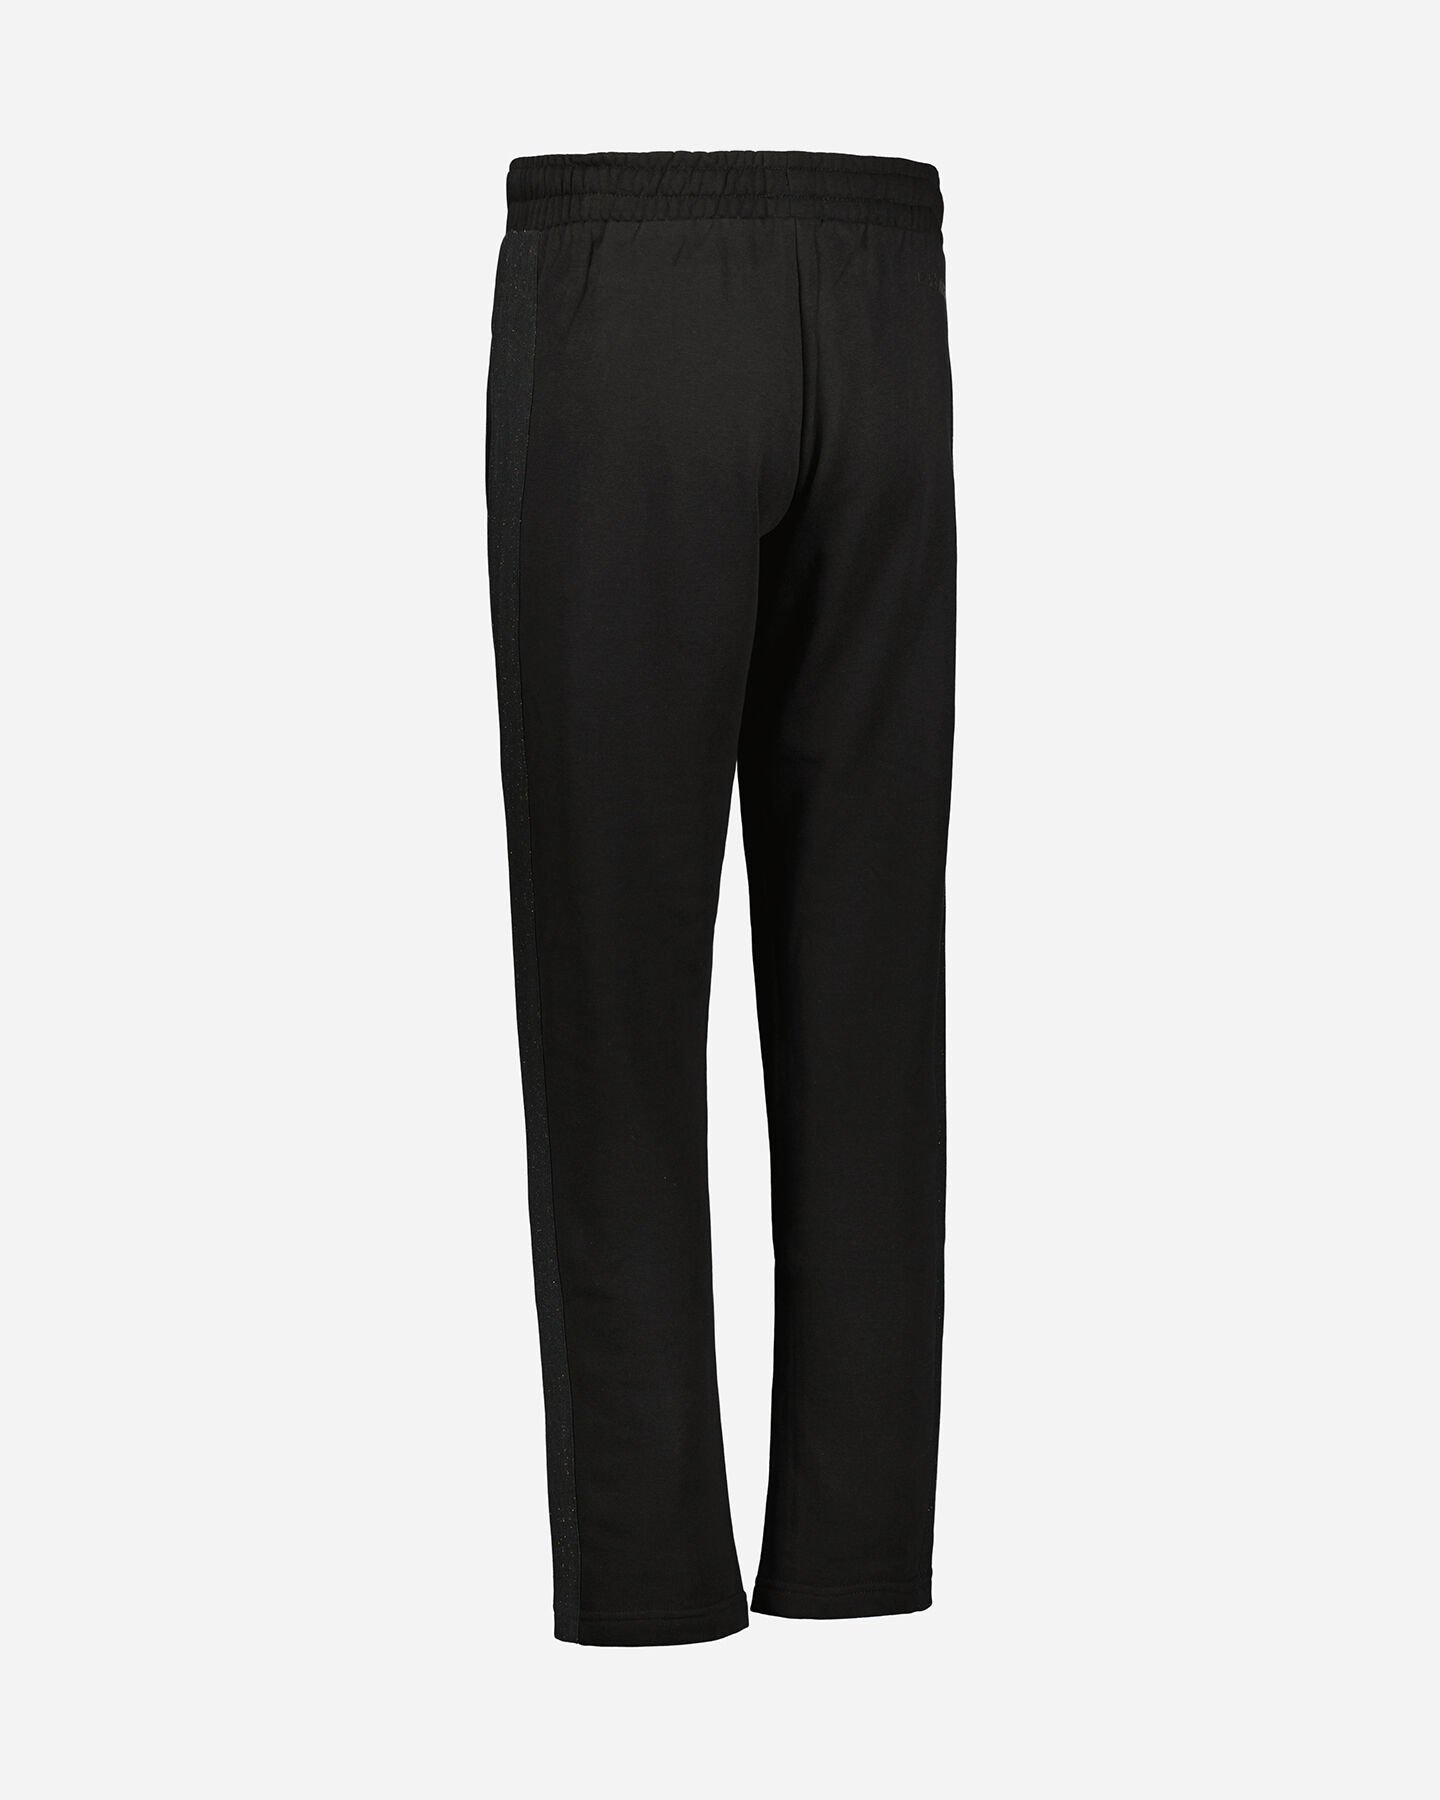  Pantalone ADMIRAL CLASSIC W S4106271|050|M scatto 2